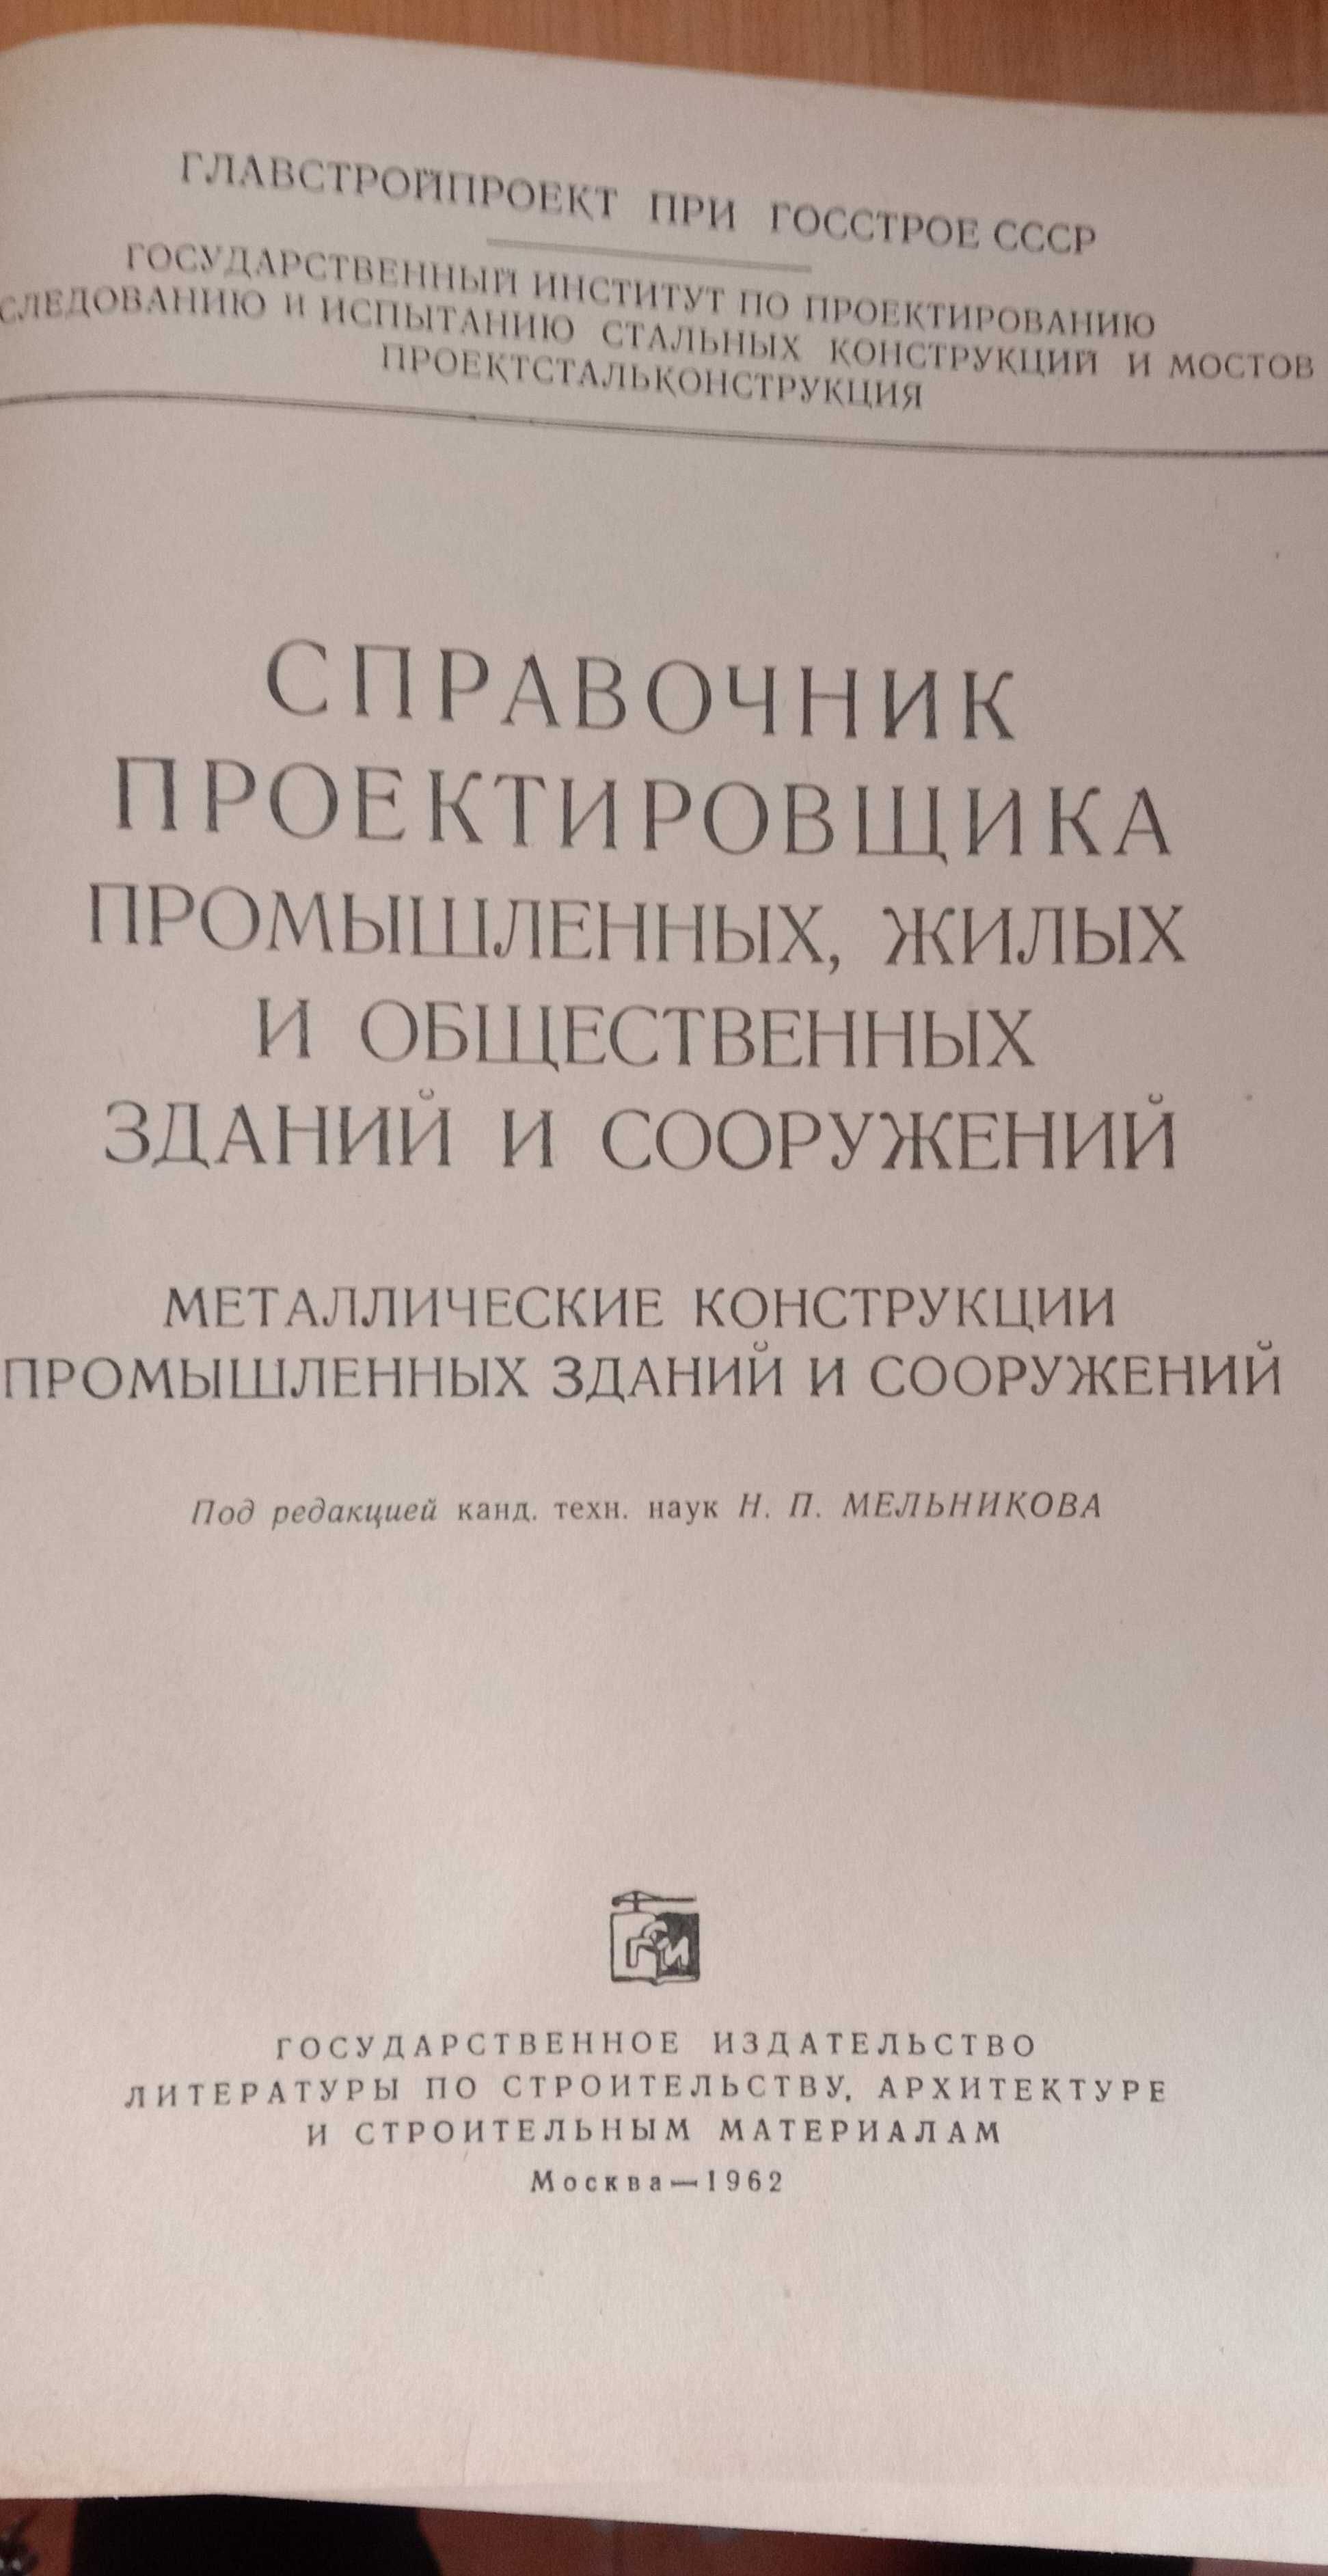 Справочник проектировщика Металлические конструкции 1962